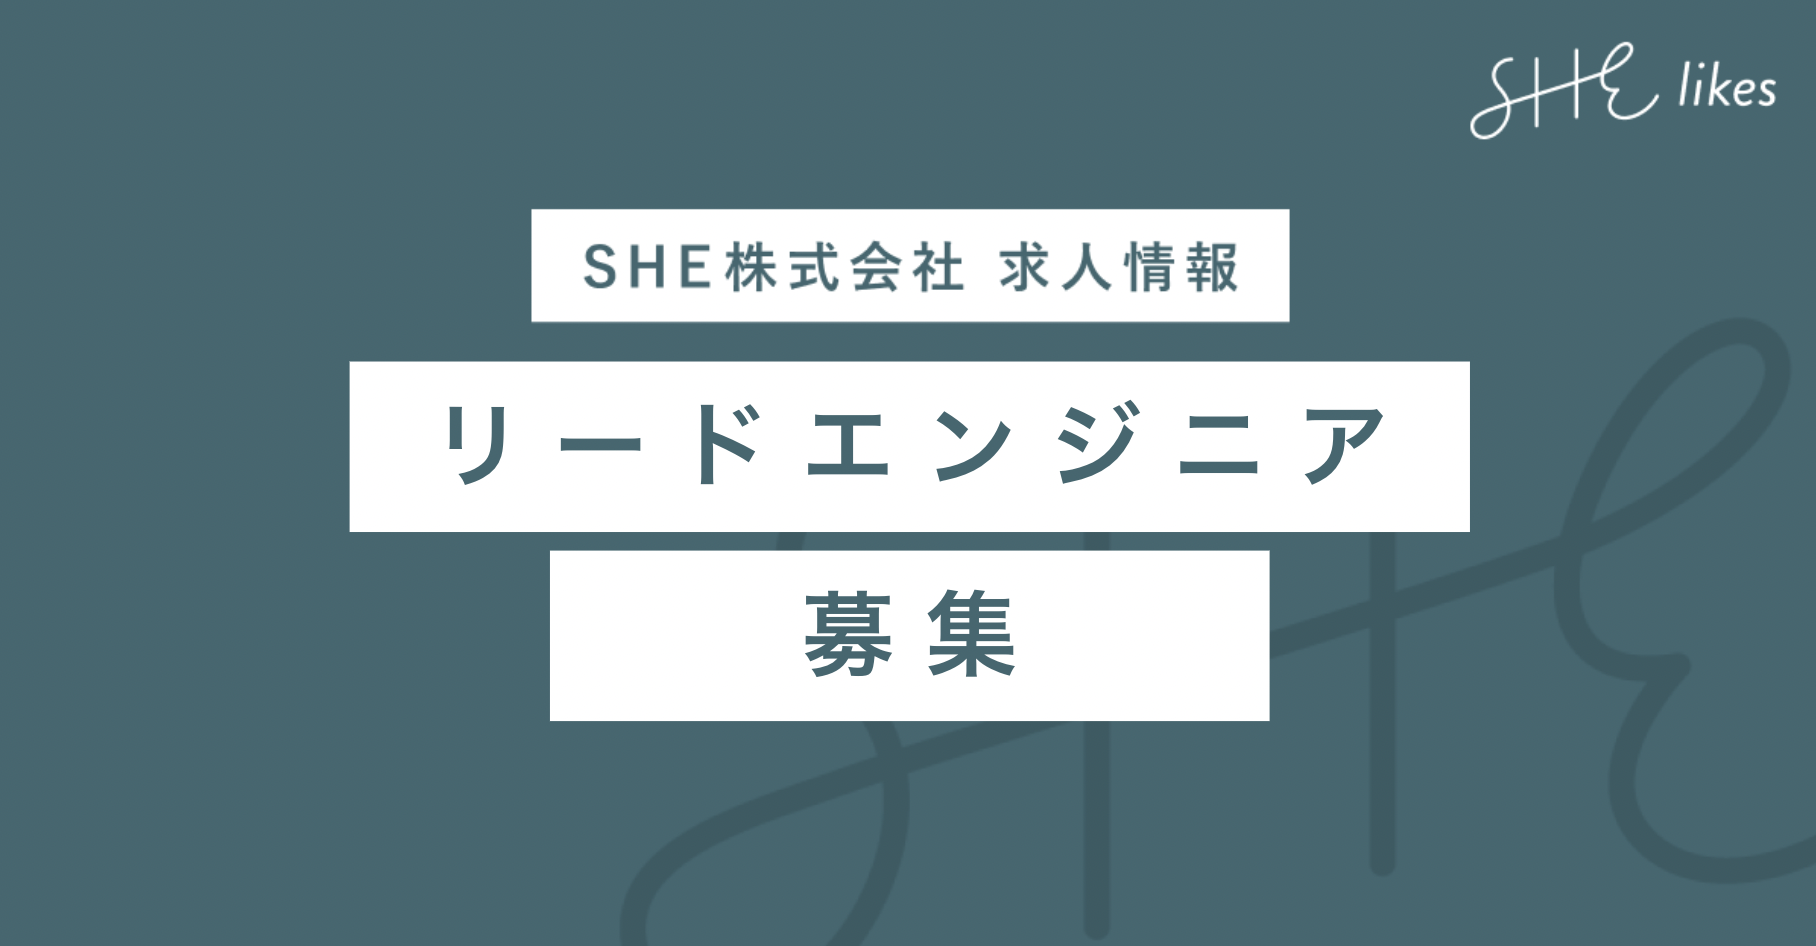 【SHEcreators事業】リードエンジニア